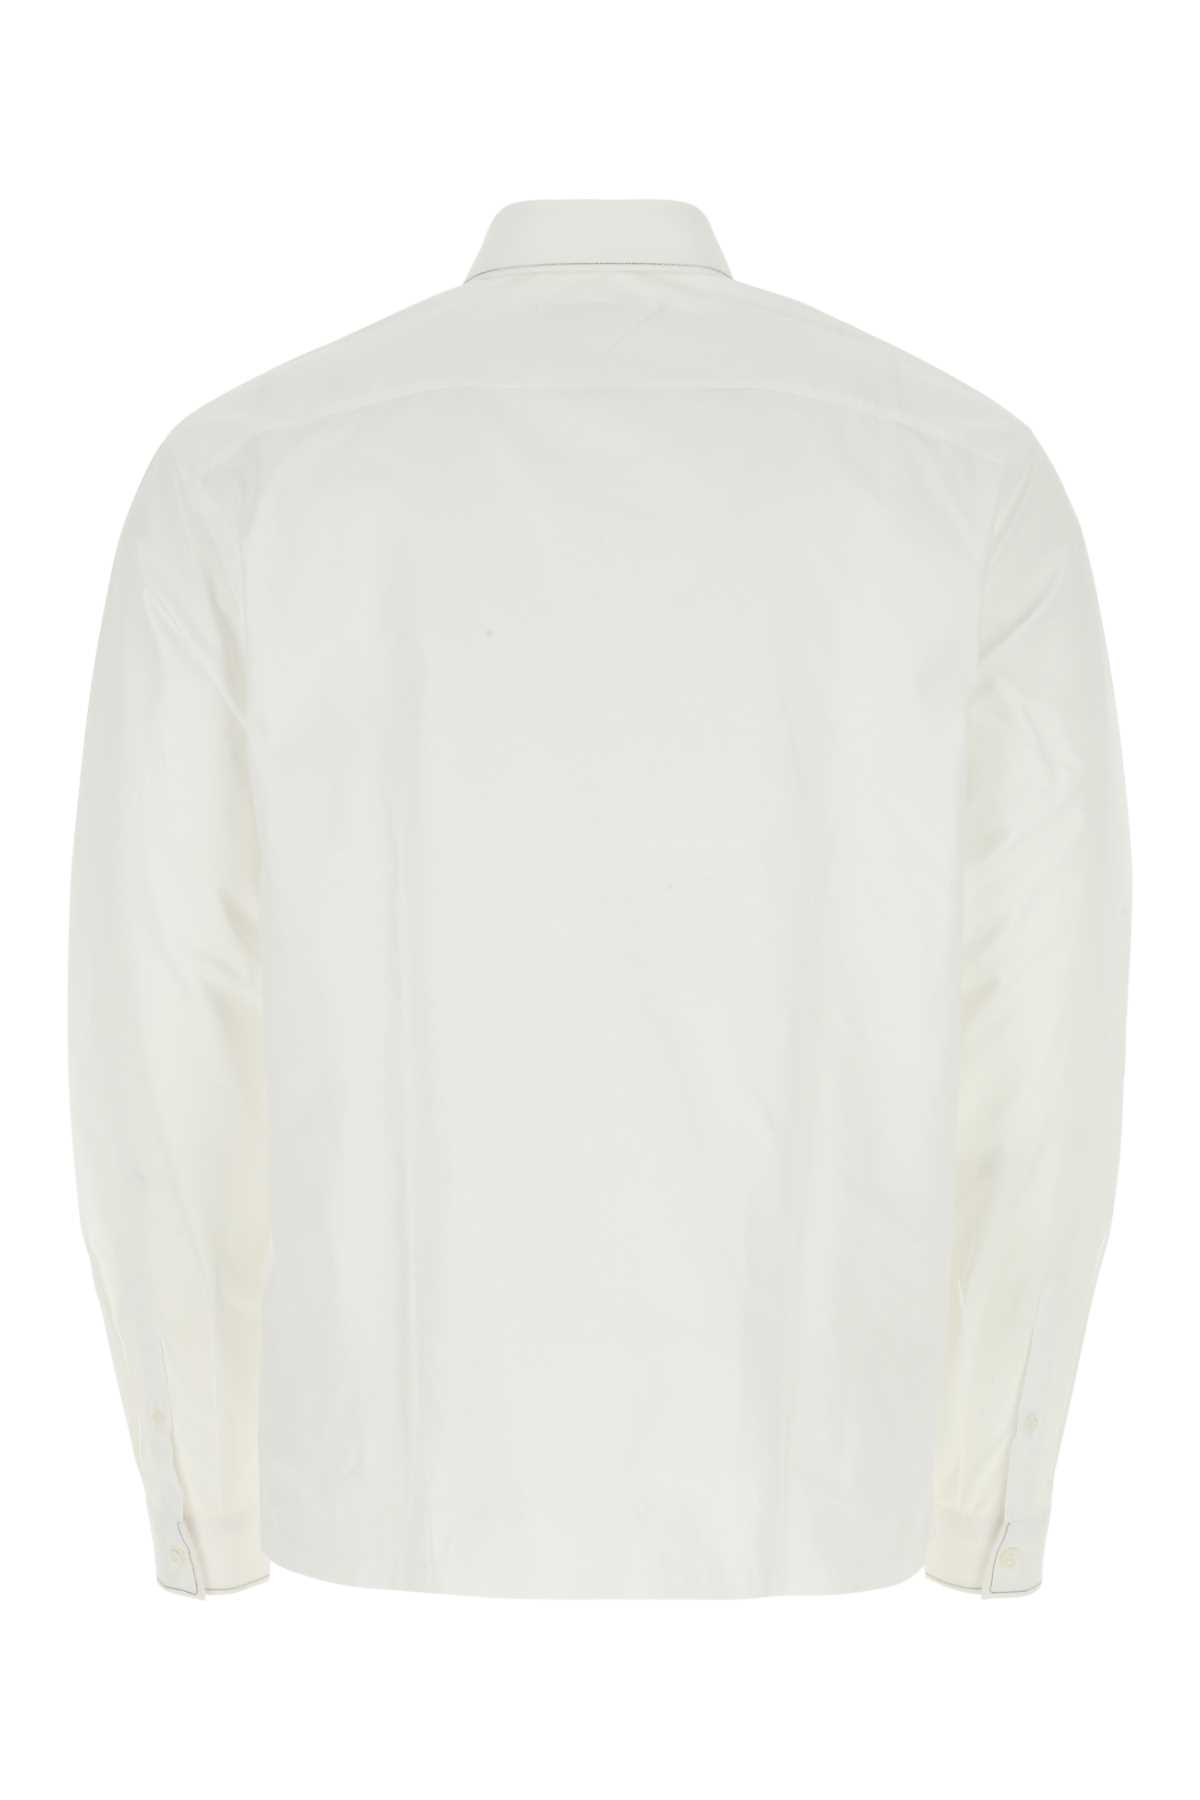 Shop Prada White Poplin Shirt